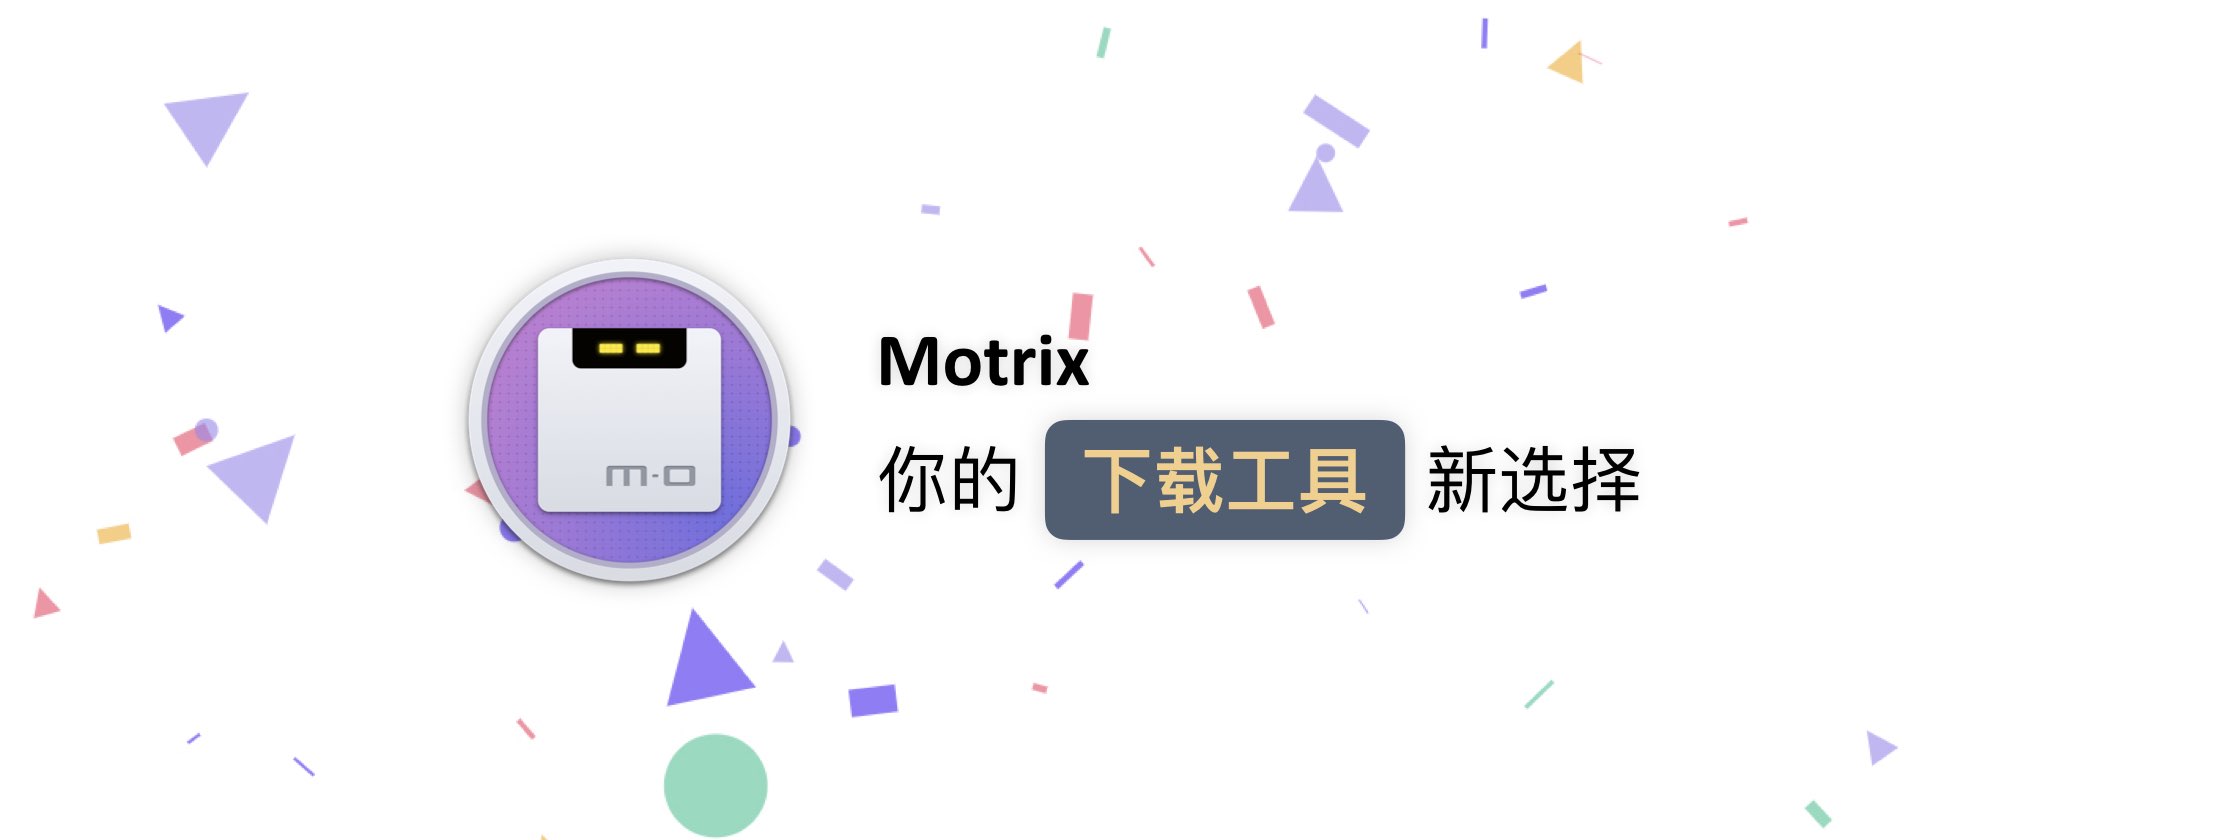 想要开源全平台的下载工具，试试看 Motrix